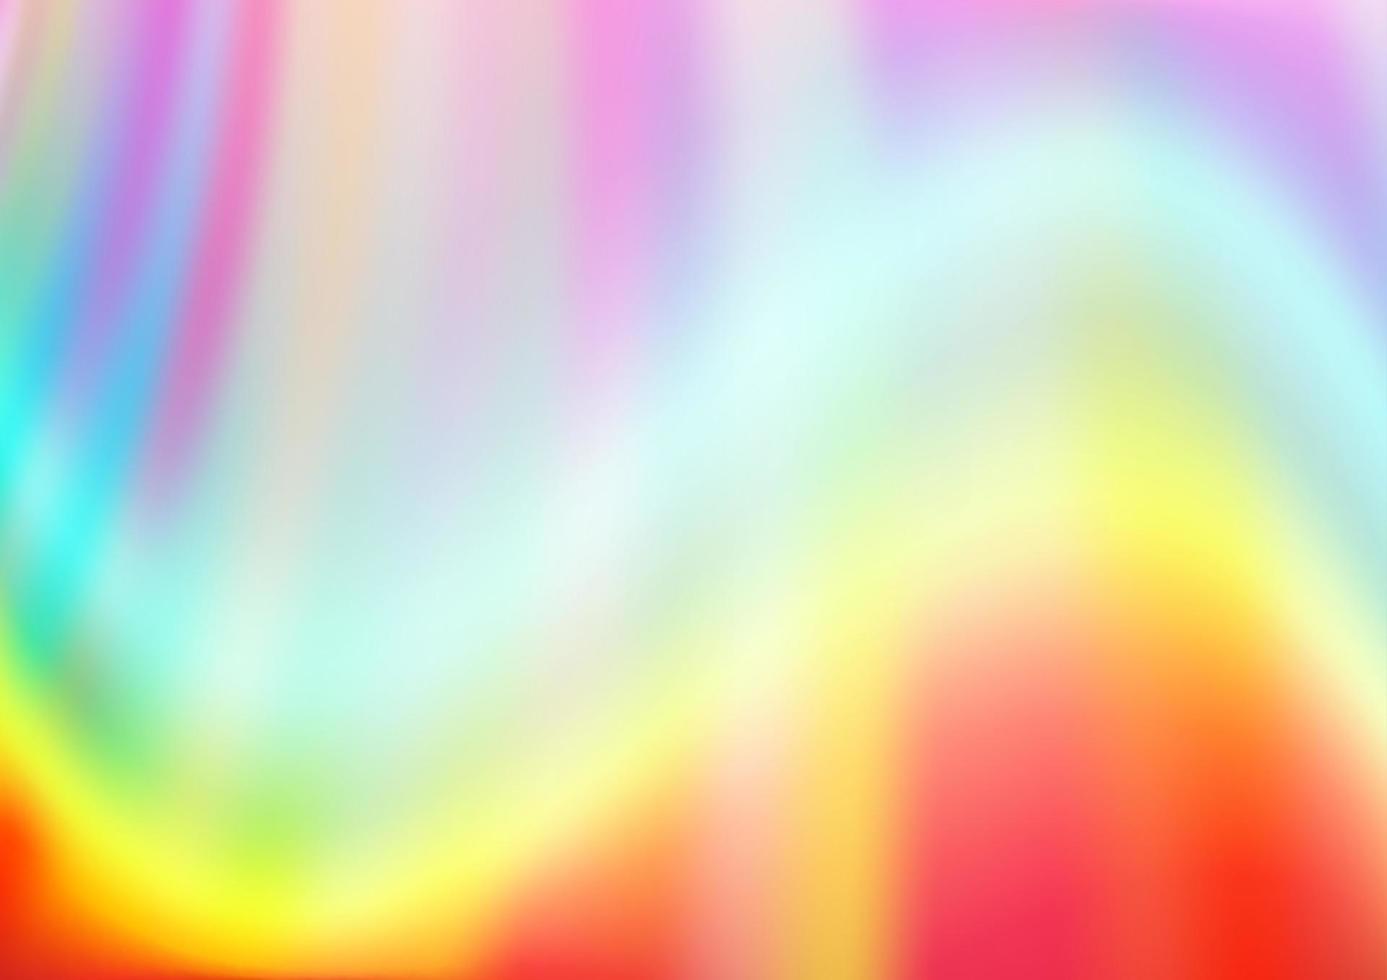 luz multicolorida, modelo de vetor de arco-íris com linhas dobradas.